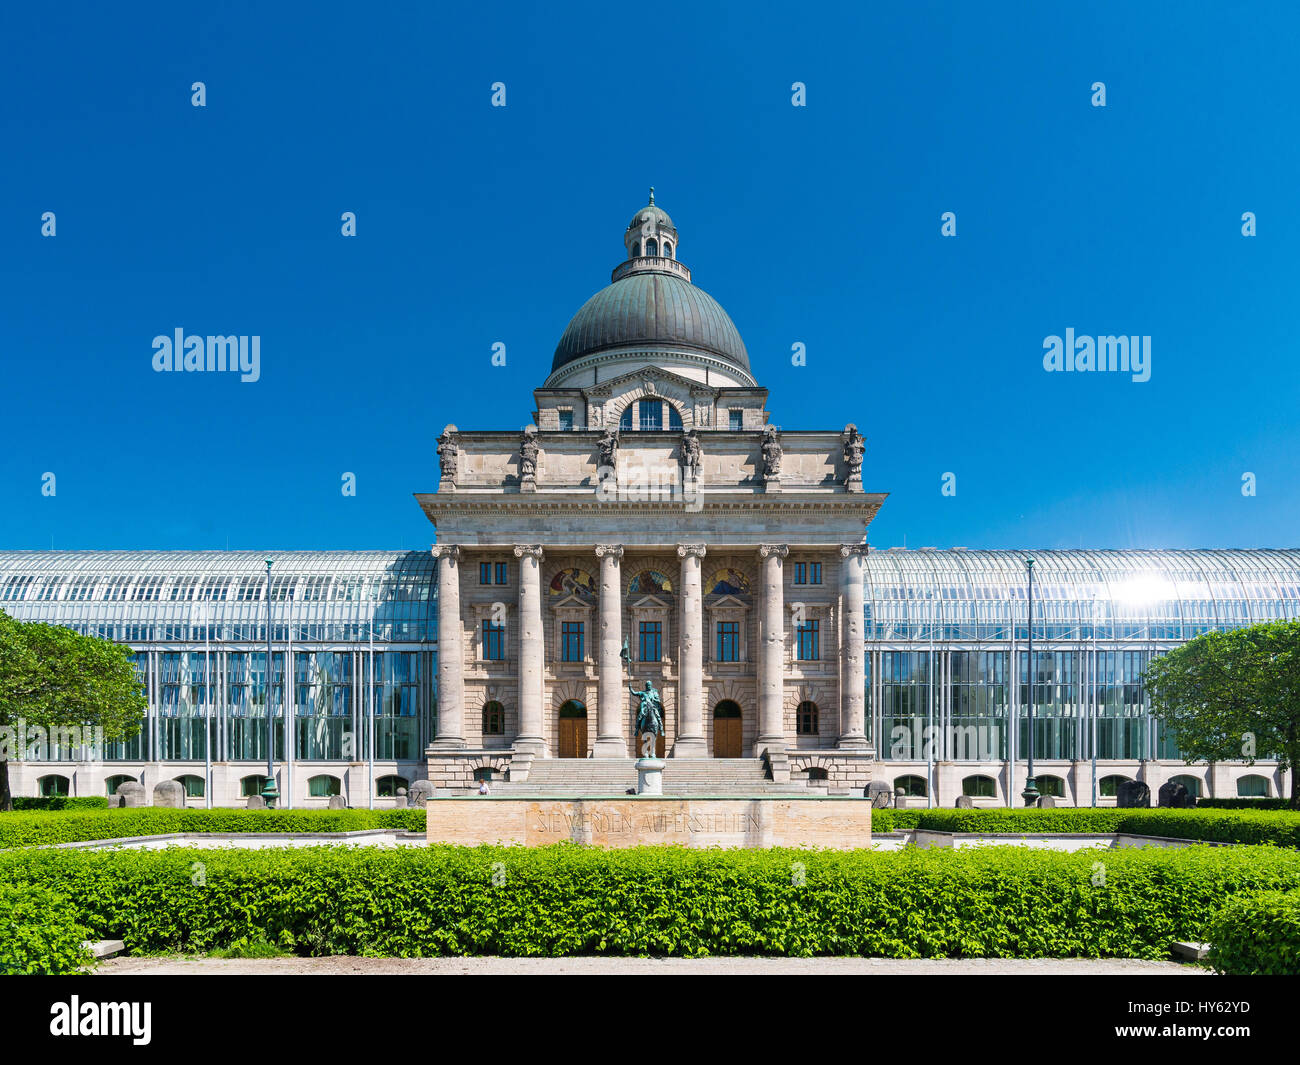 Monaco di Baviera, Germania - 7 Giugno 2016: Bayerische Staatskanzlei bavarese - Cancelleria dello Stato è il nome di un ente di Stato tedesco del Libero Stato di Bavari Foto Stock